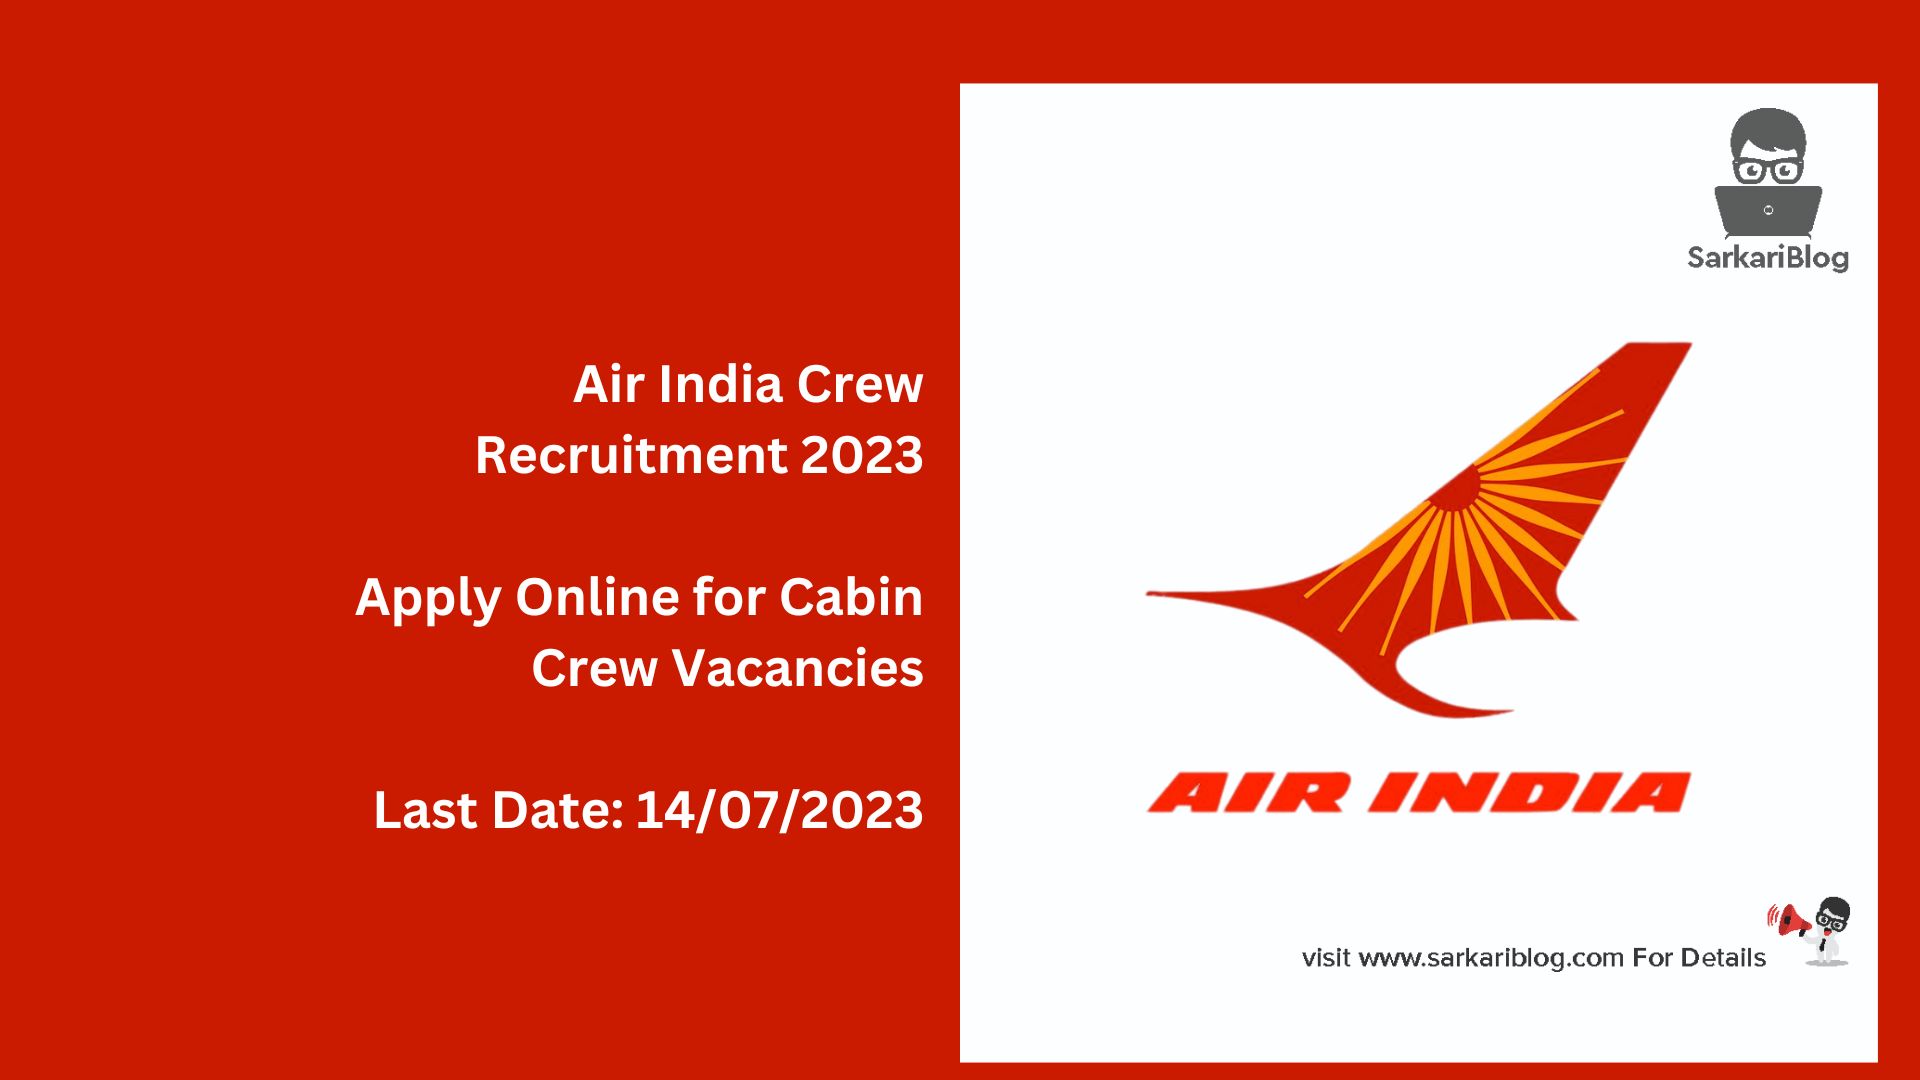 Air India Crew Recruitment 2023